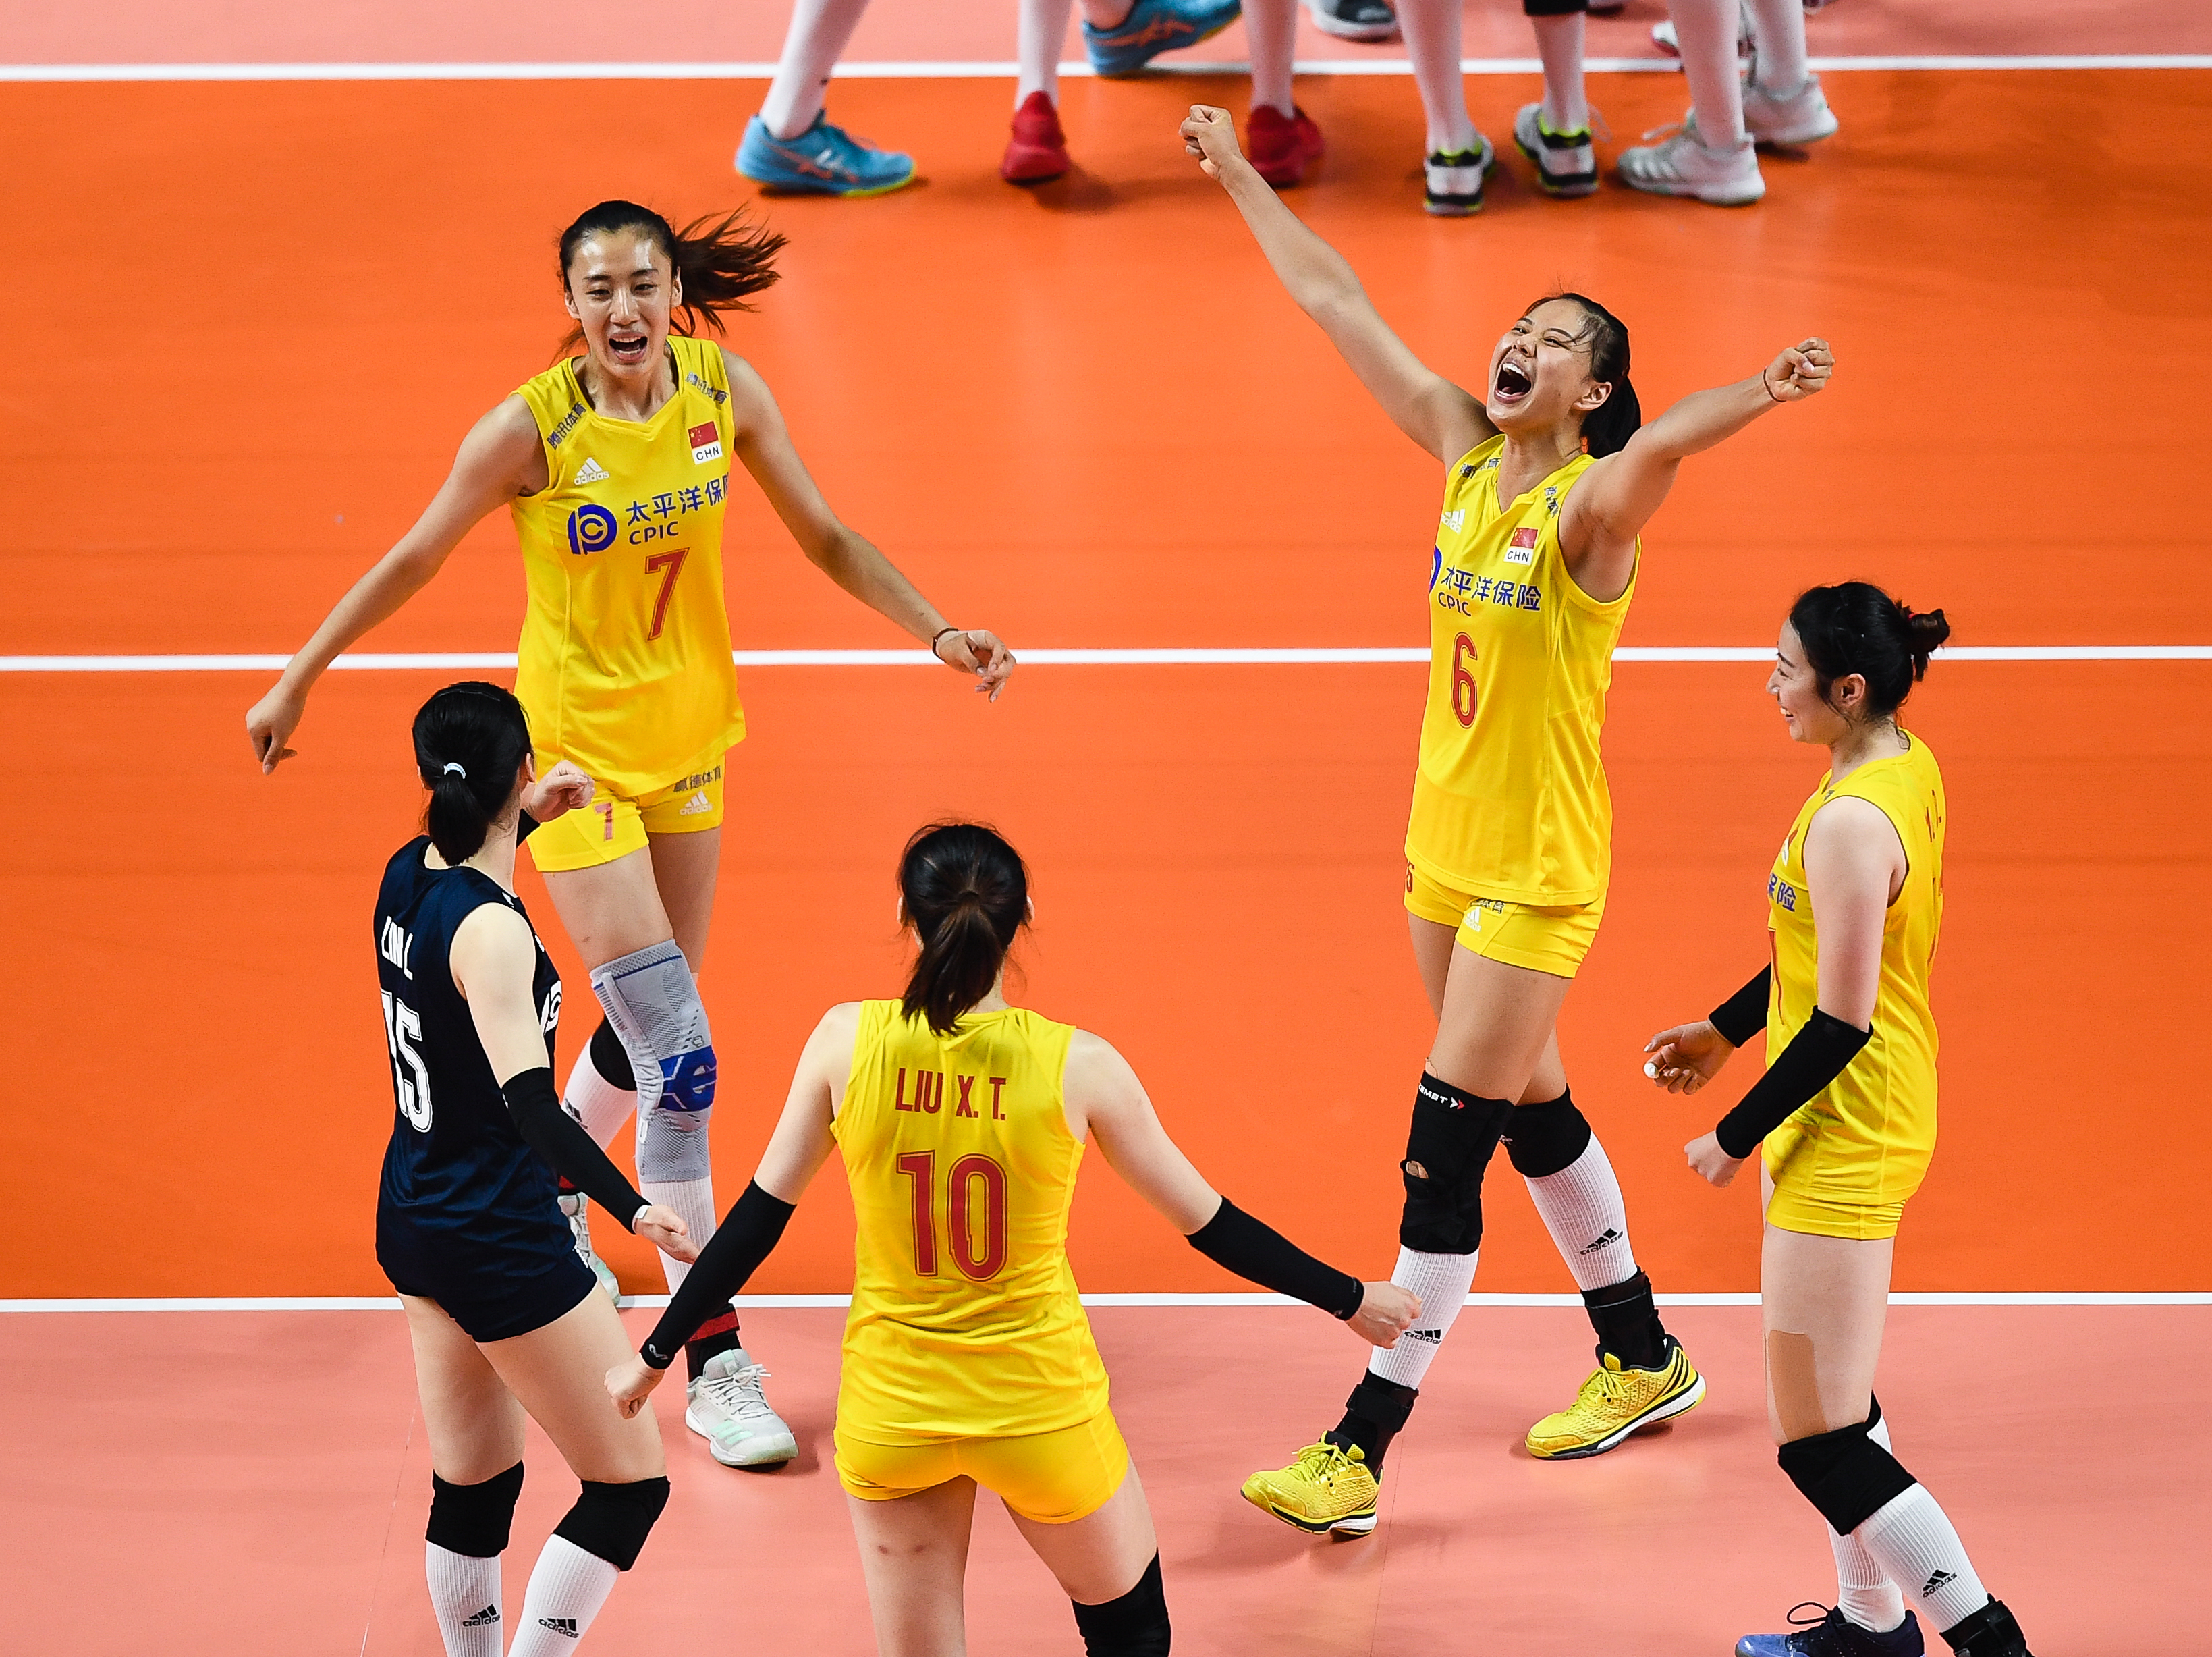 排球——2019世界女排联赛总决赛:中国队获得季军